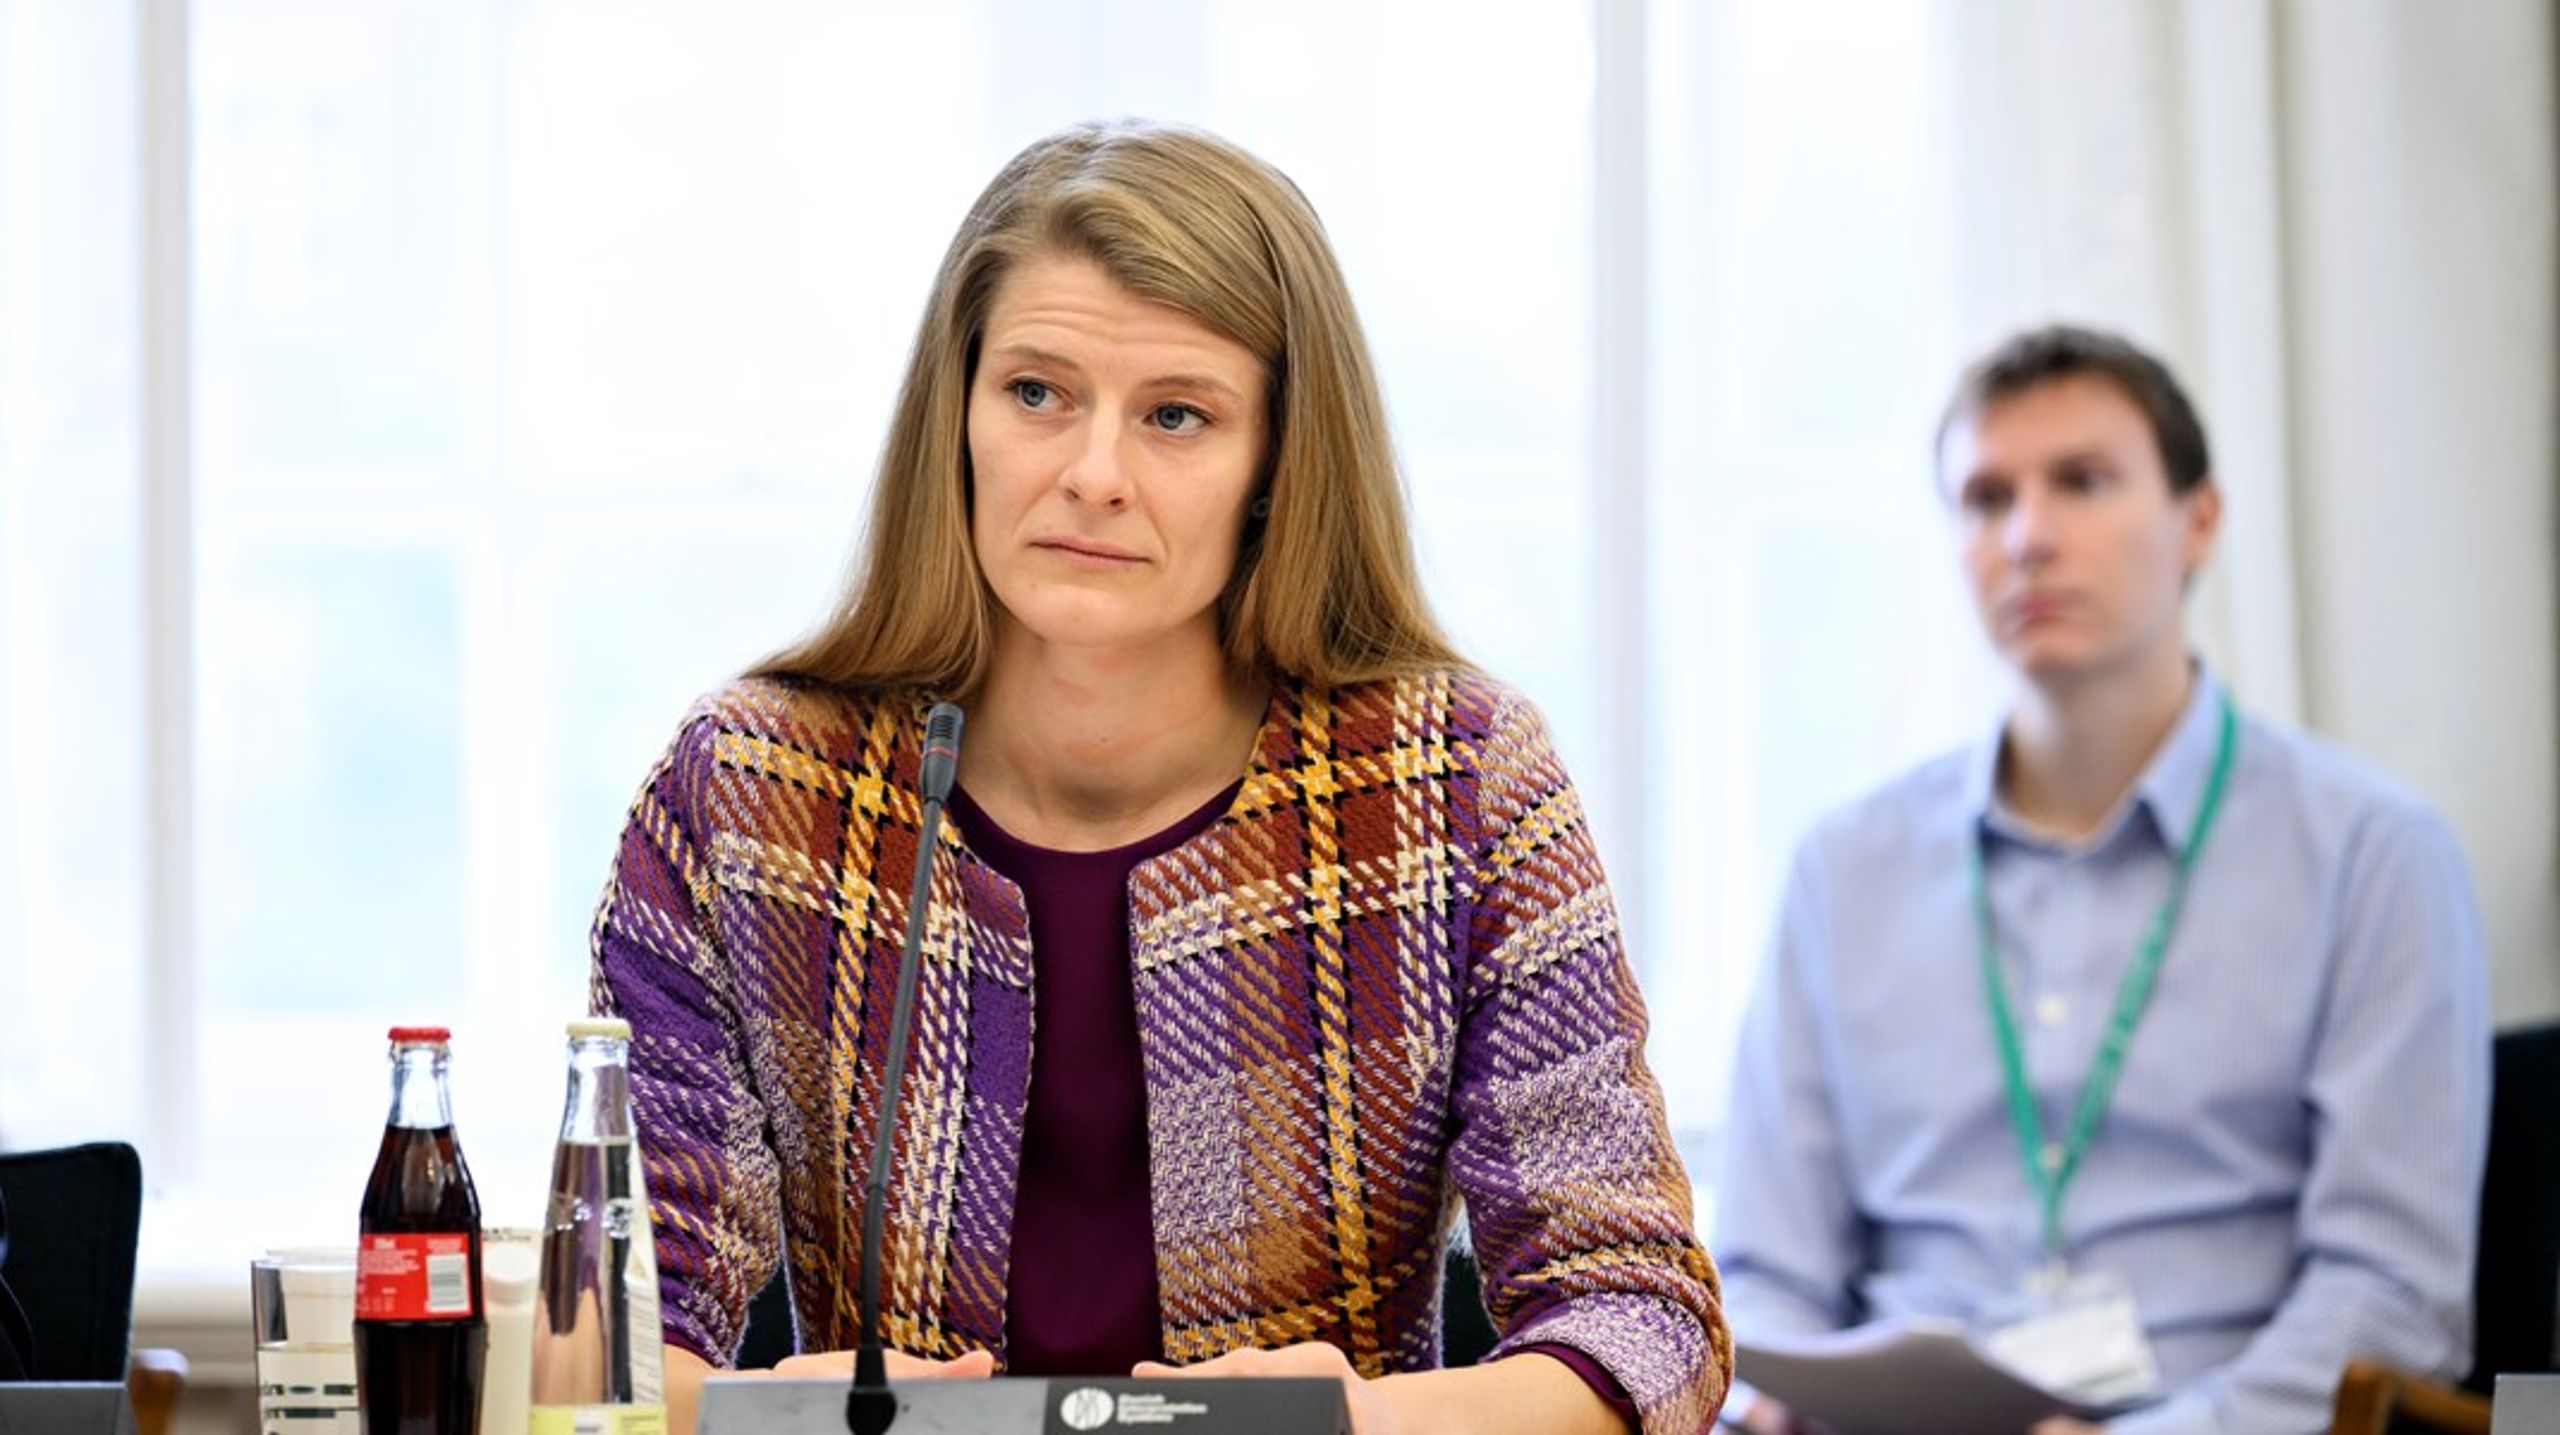 Beskæftigelsesminister Ane Halsboe-Jørgensen (S) er onsdag kaldt i samråd for at redegøre for problemerne med de kommunale afgørelser, som Ankestyrelsen har påpeget i en ny rapport.